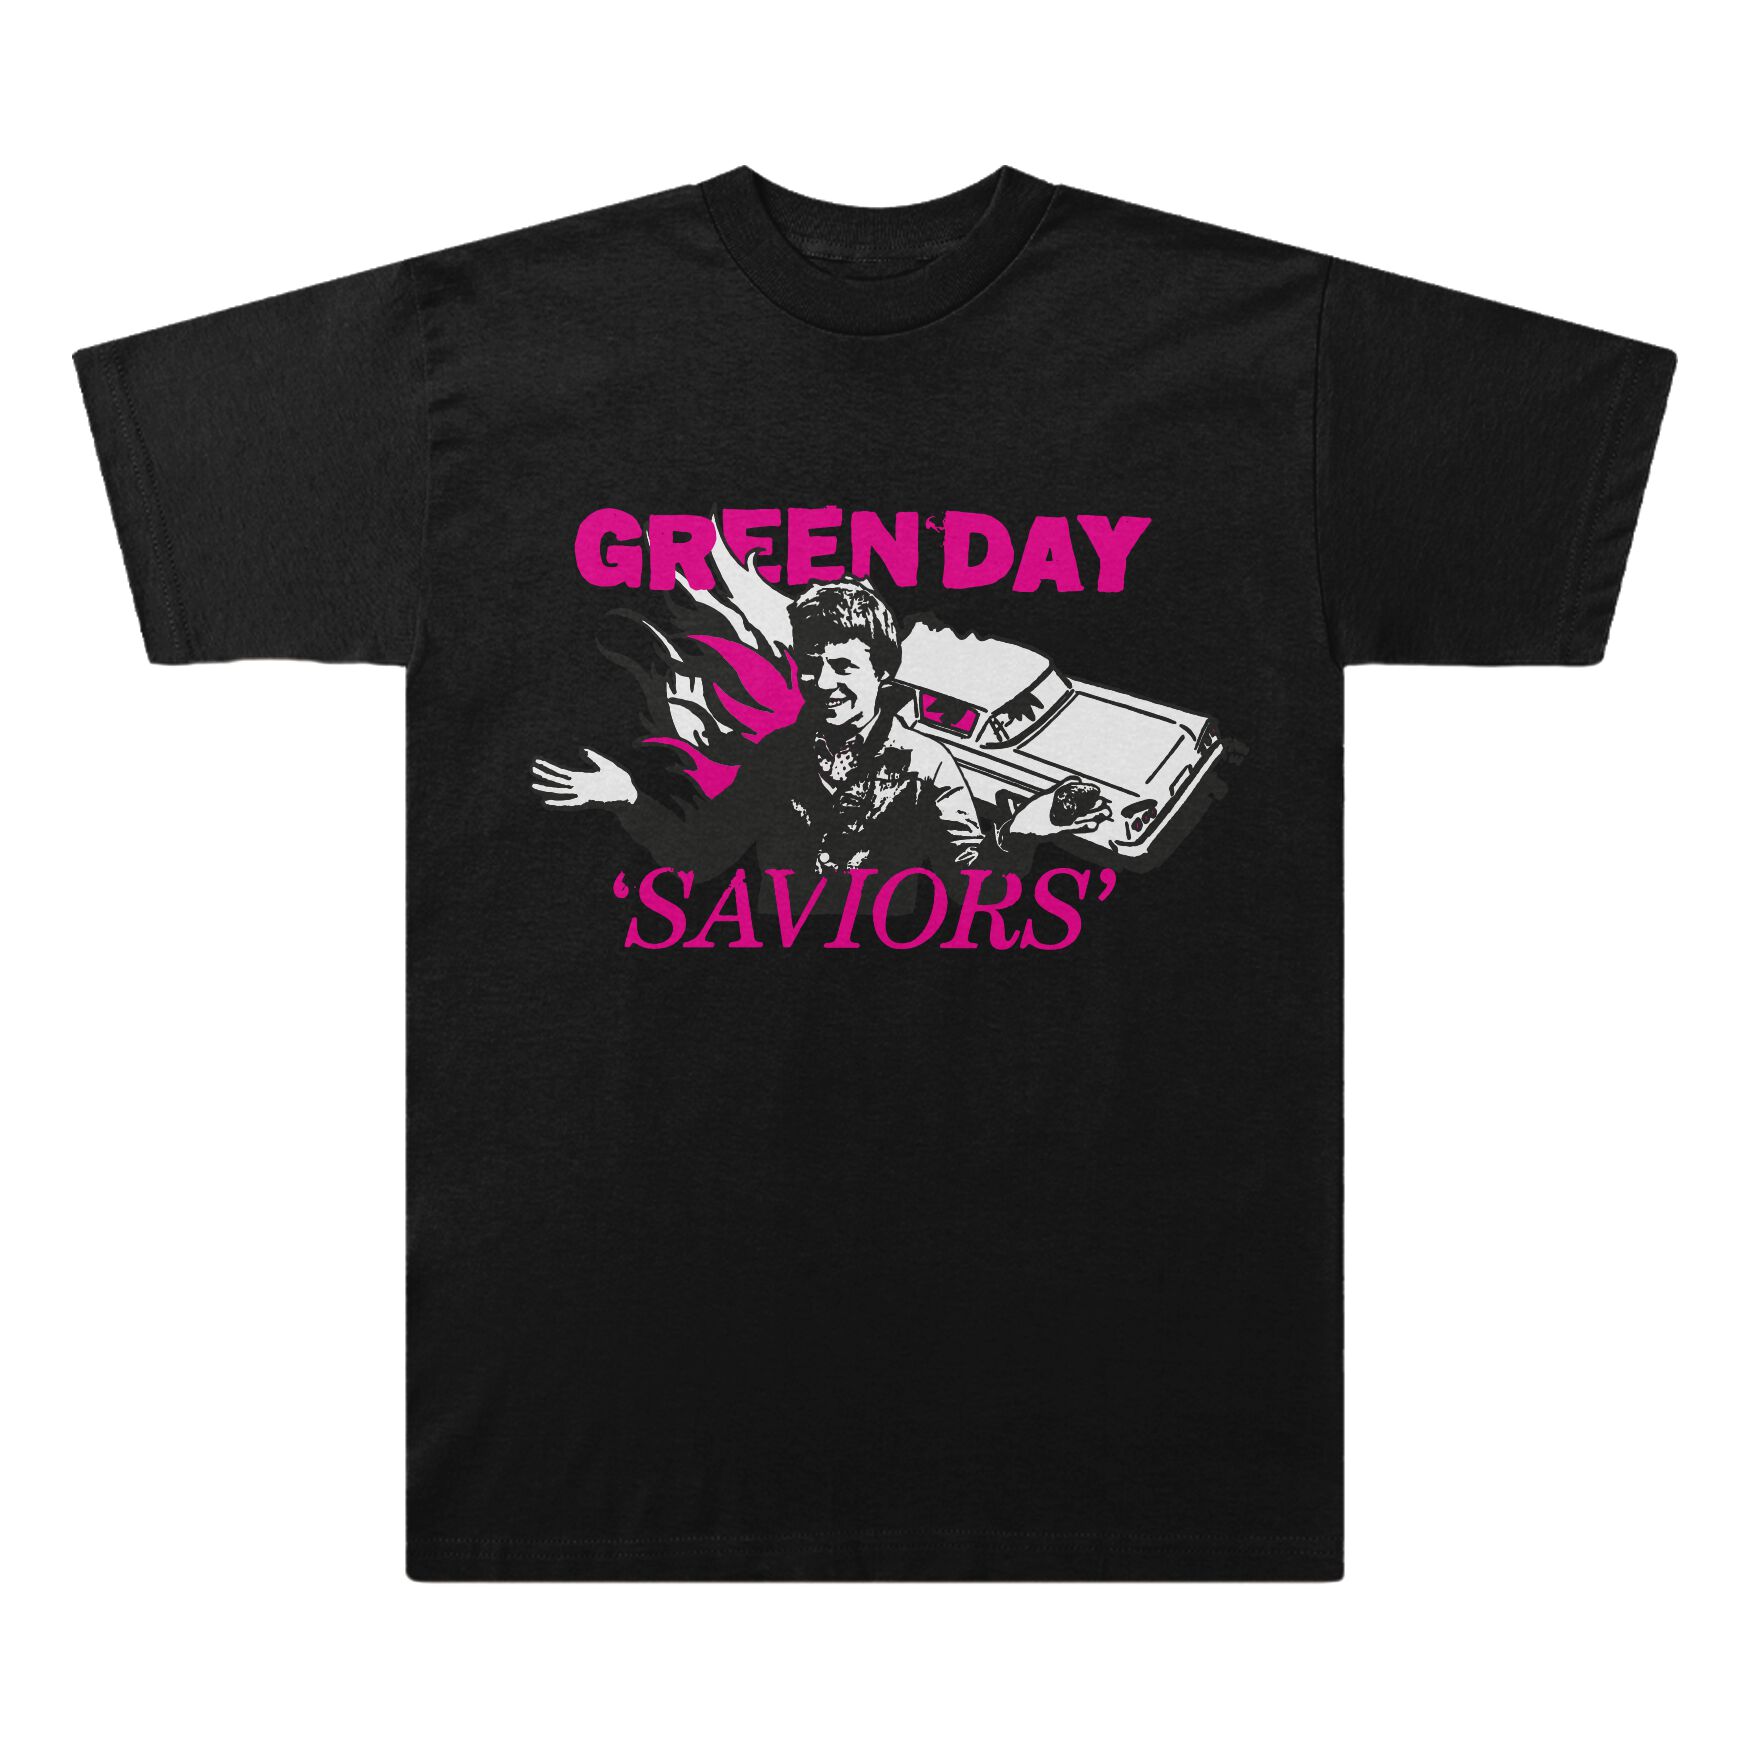 Green Day T-Shirt - Saviors Illustration - S bis XXL - für Männer - Größe M - schwarz  - Lizenziertes Merchandise!